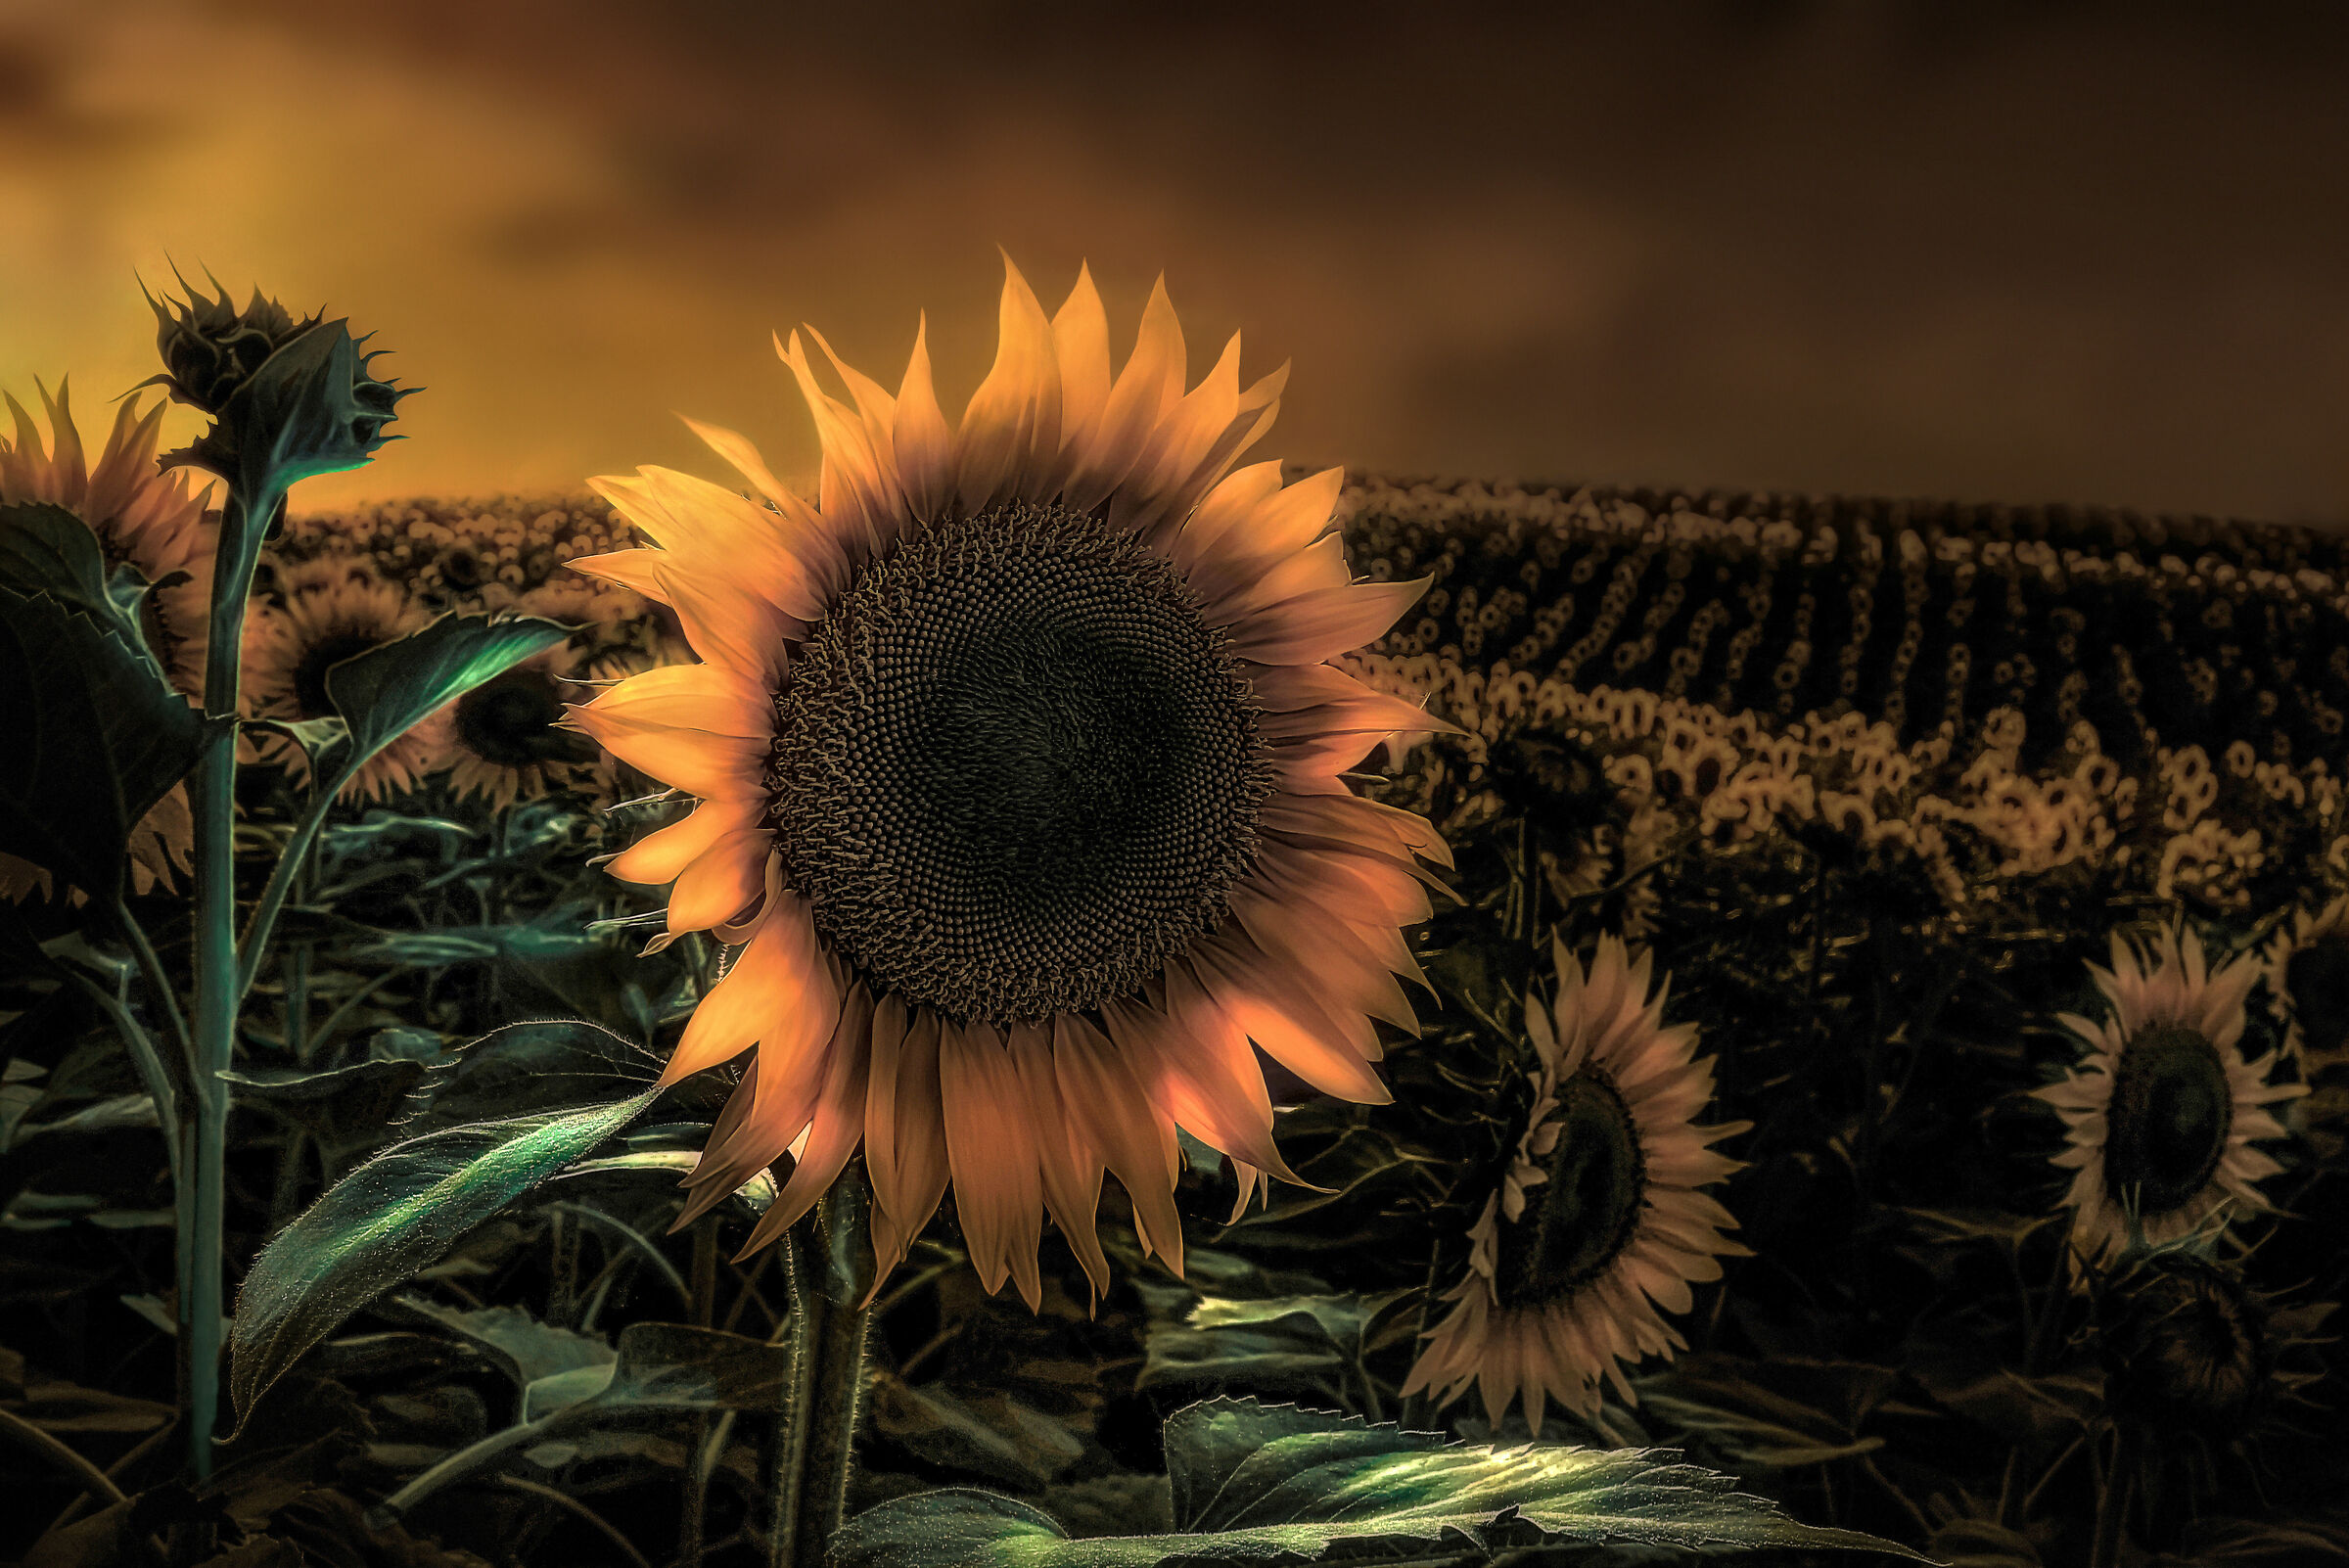 Sunflowers after dark...